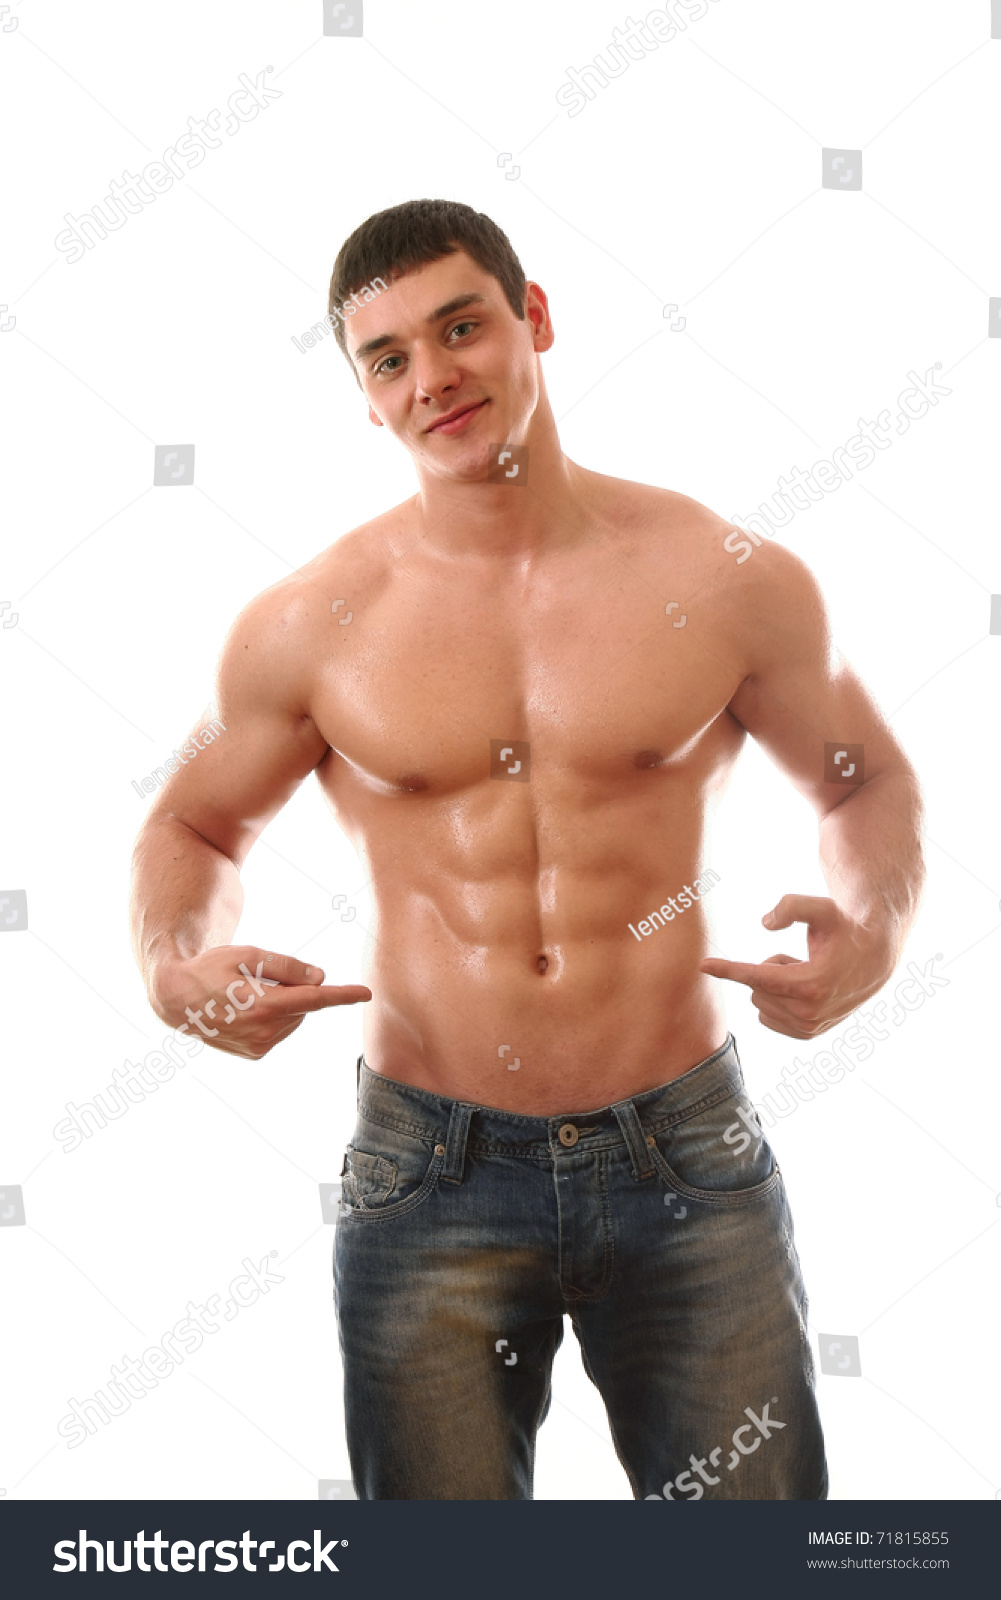 Hot Gay Muscular Men 39